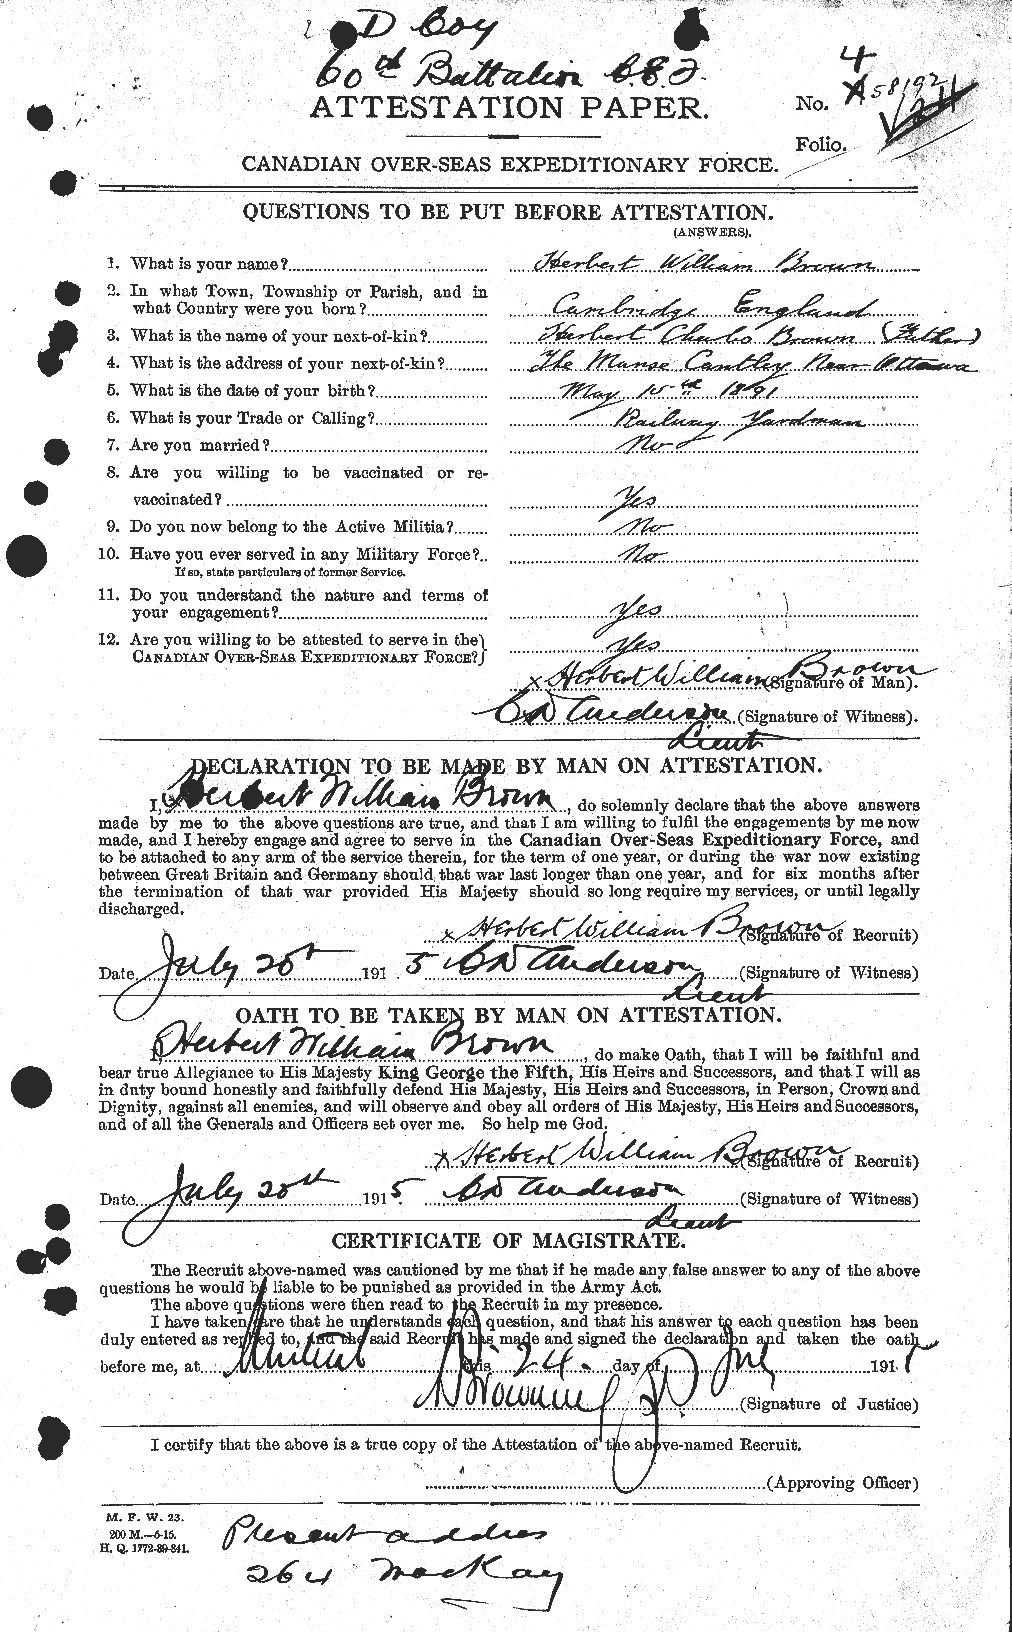 Dossiers du Personnel de la Première Guerre mondiale - CEC 265594a